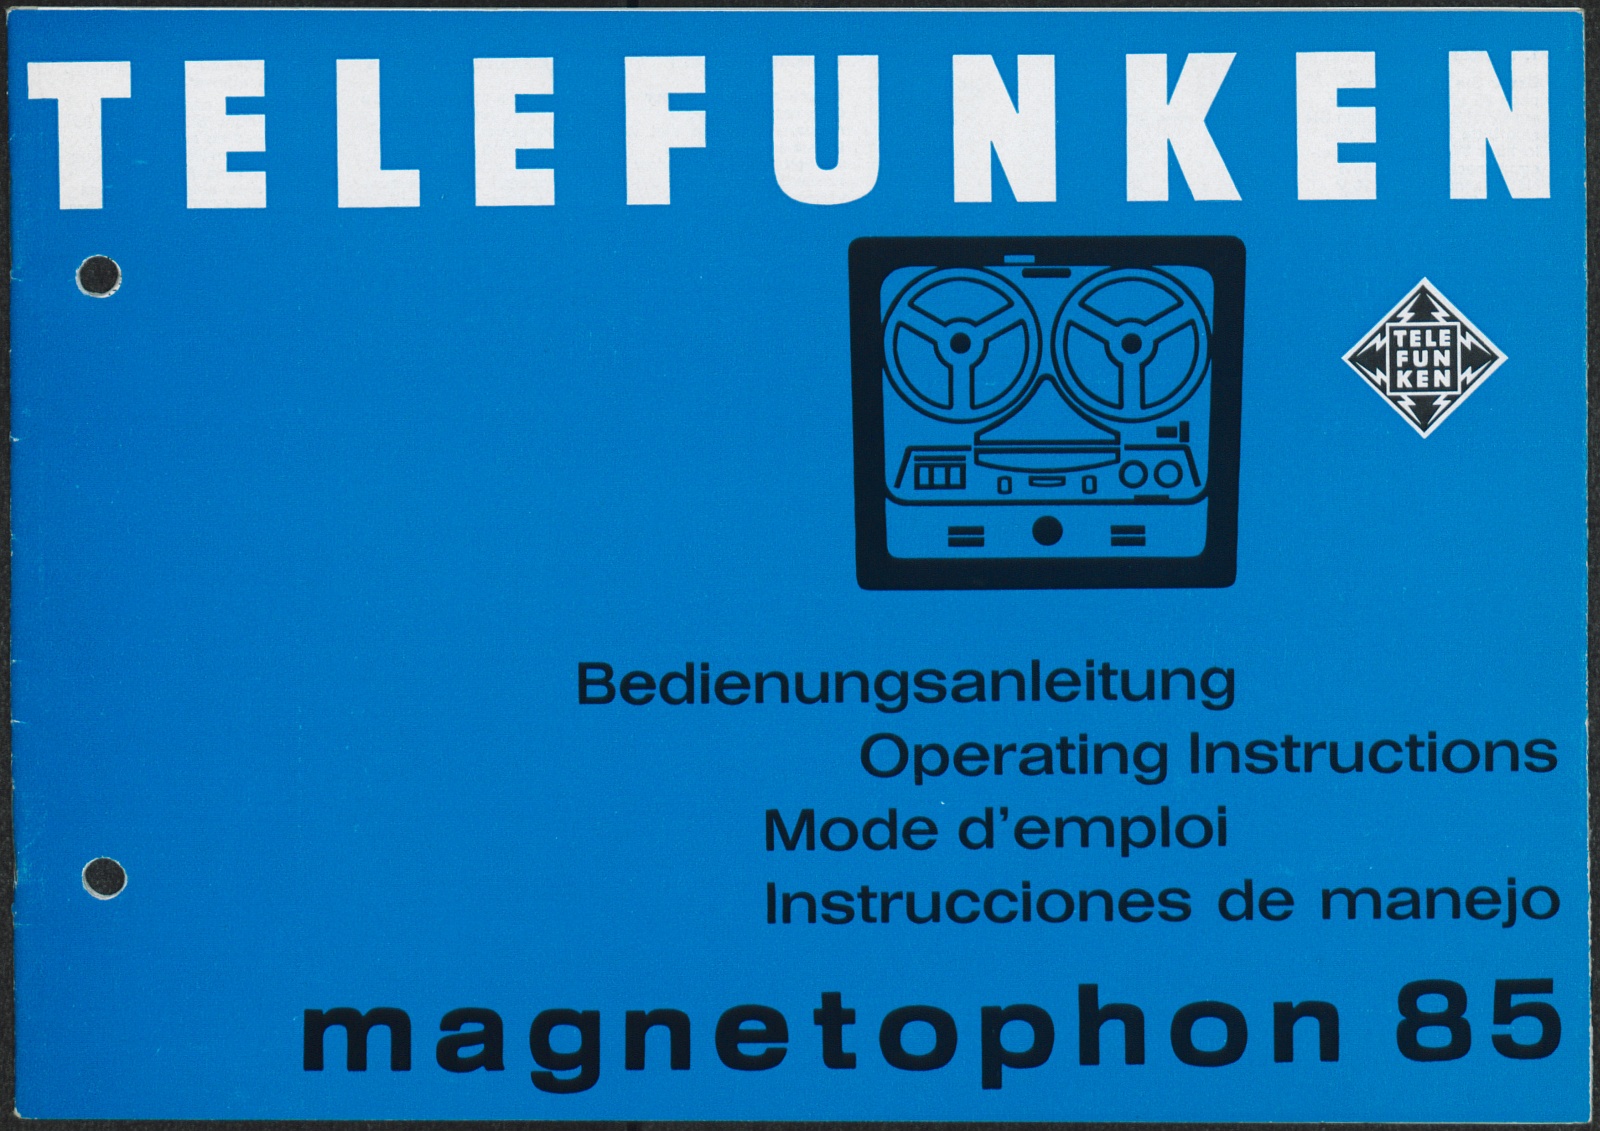 Bedienungsanleitung: Telefunken Bedienungsanleitung magnetophon 85 (Stiftung Deutsches Technikmuseum Berlin CC0)